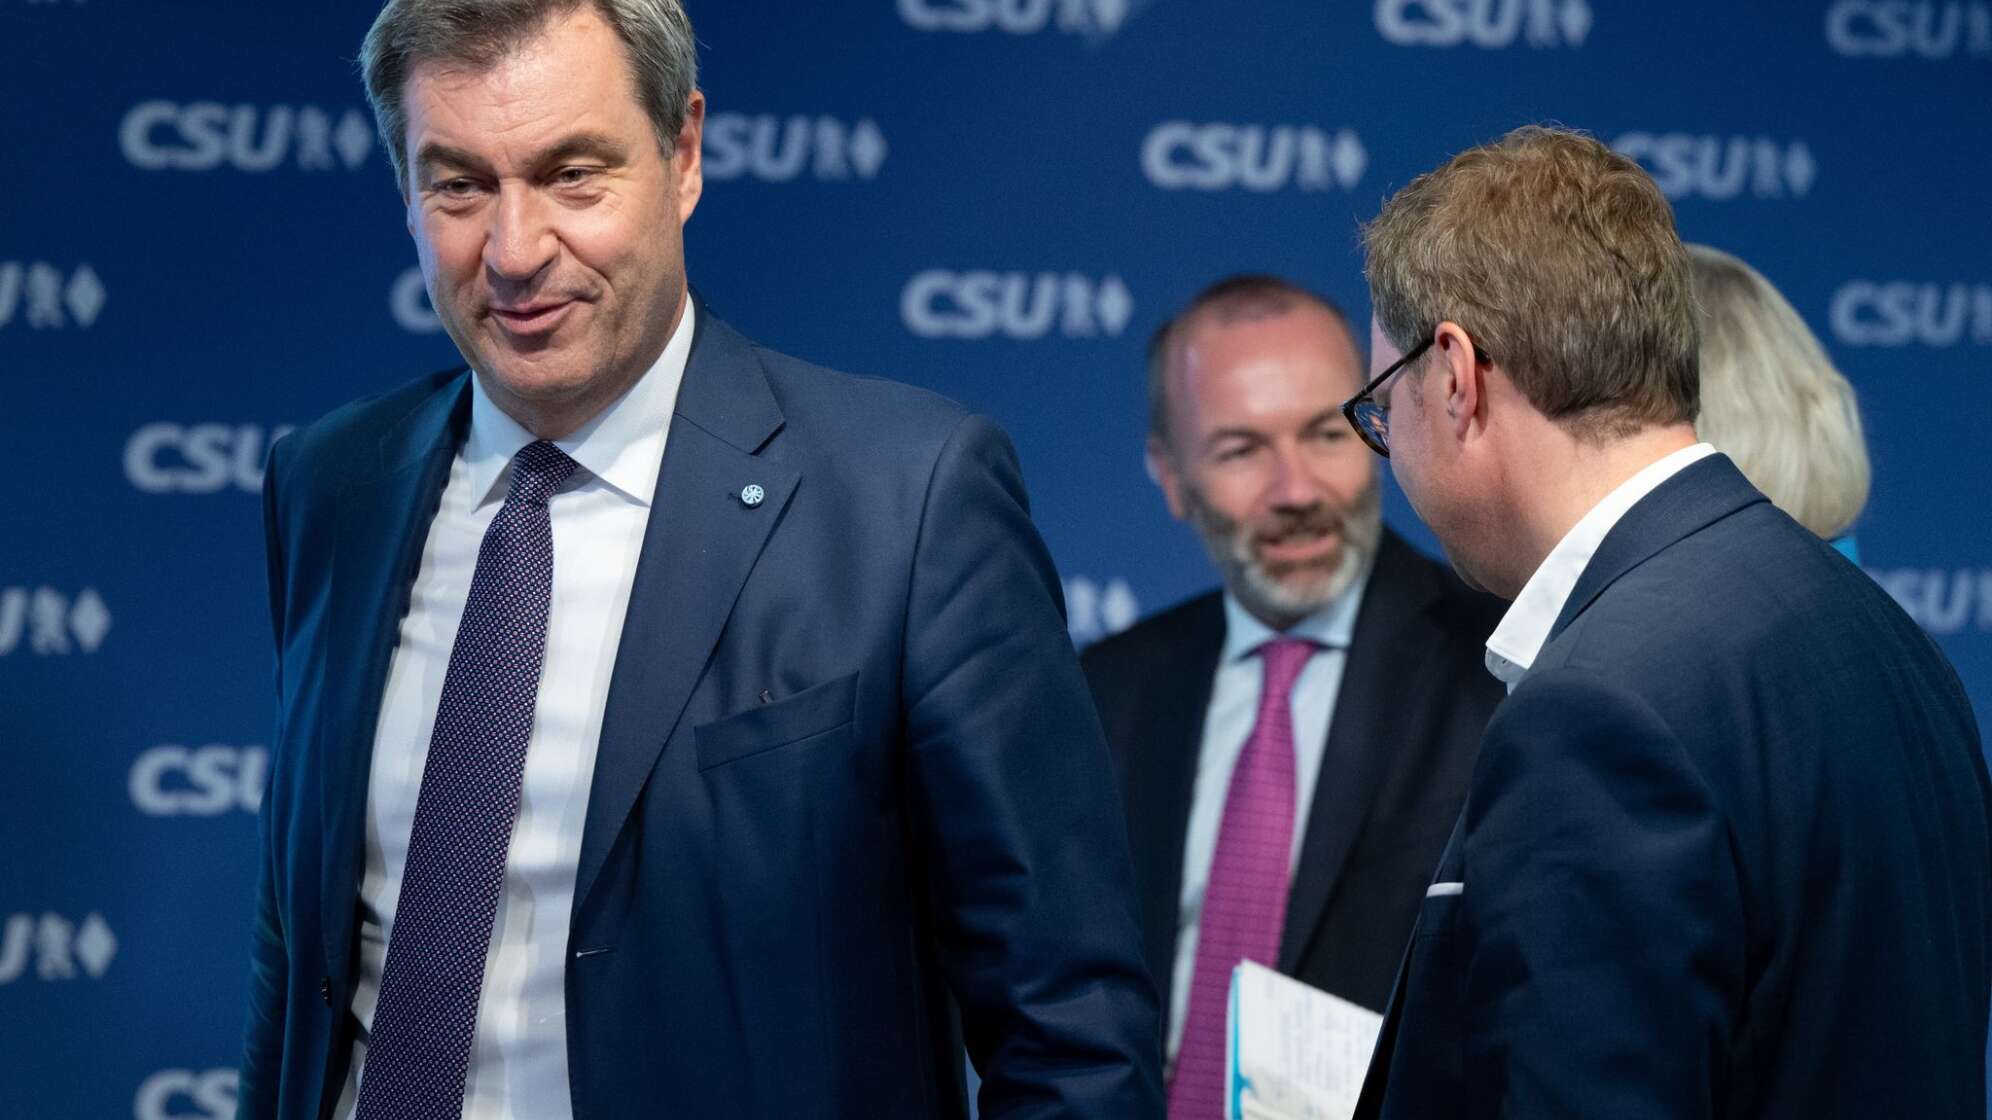 Nach der Europawahl - CSU